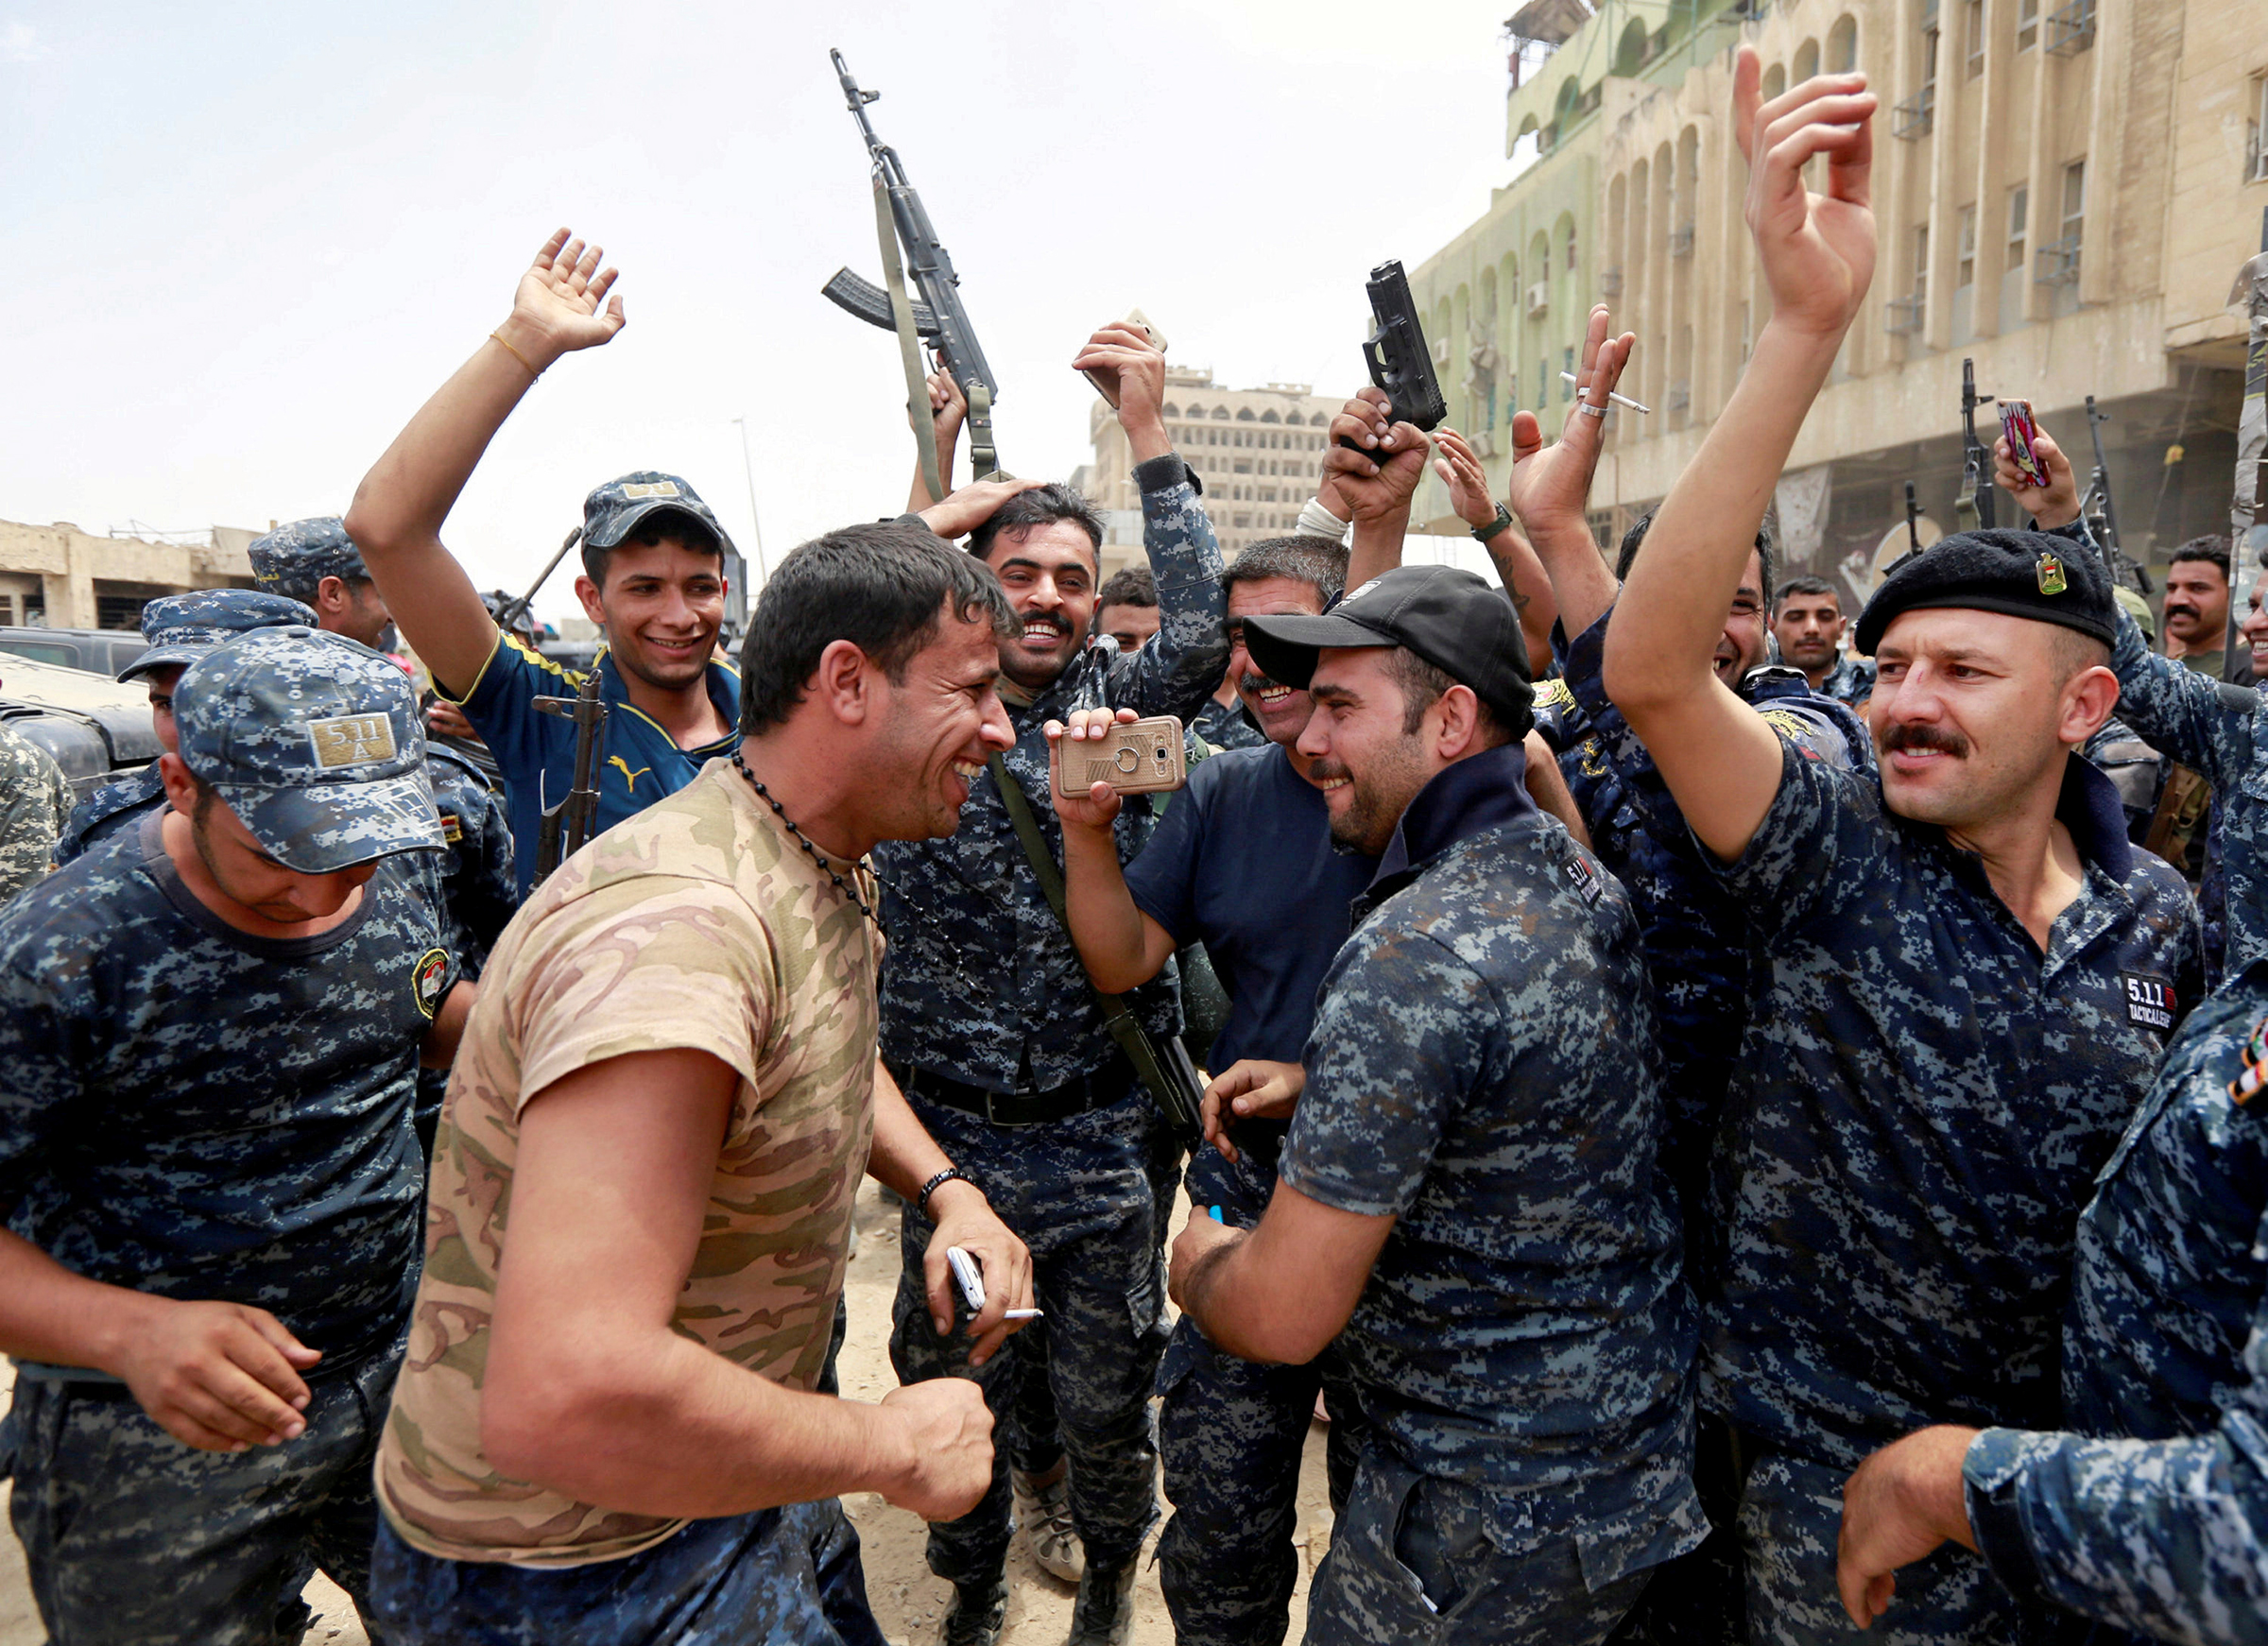 <p>Автор фото Ахмед Саад: &laquo;Это первый момент, когда иракские солдаты выражают свою радость и облегчение после жестокой почти девятимесячной битвы, в ходе которой они потеряли многих товарищей.</p>

<p>Я пошел посмотреть на торжества, когда мы узнали, что боевые действия практически закончились и объявлено об окончательной победе.</p>

<p>Солдаты стреляли в воздух. Фотографы беспокоились по этому поводу, поэтому не торопились снимать бронежилеты. Но я был счастлив, что мы почти избавились от террористов и мирные жители наконец-то смогут вернуться в свои дома&raquo;.</p>
